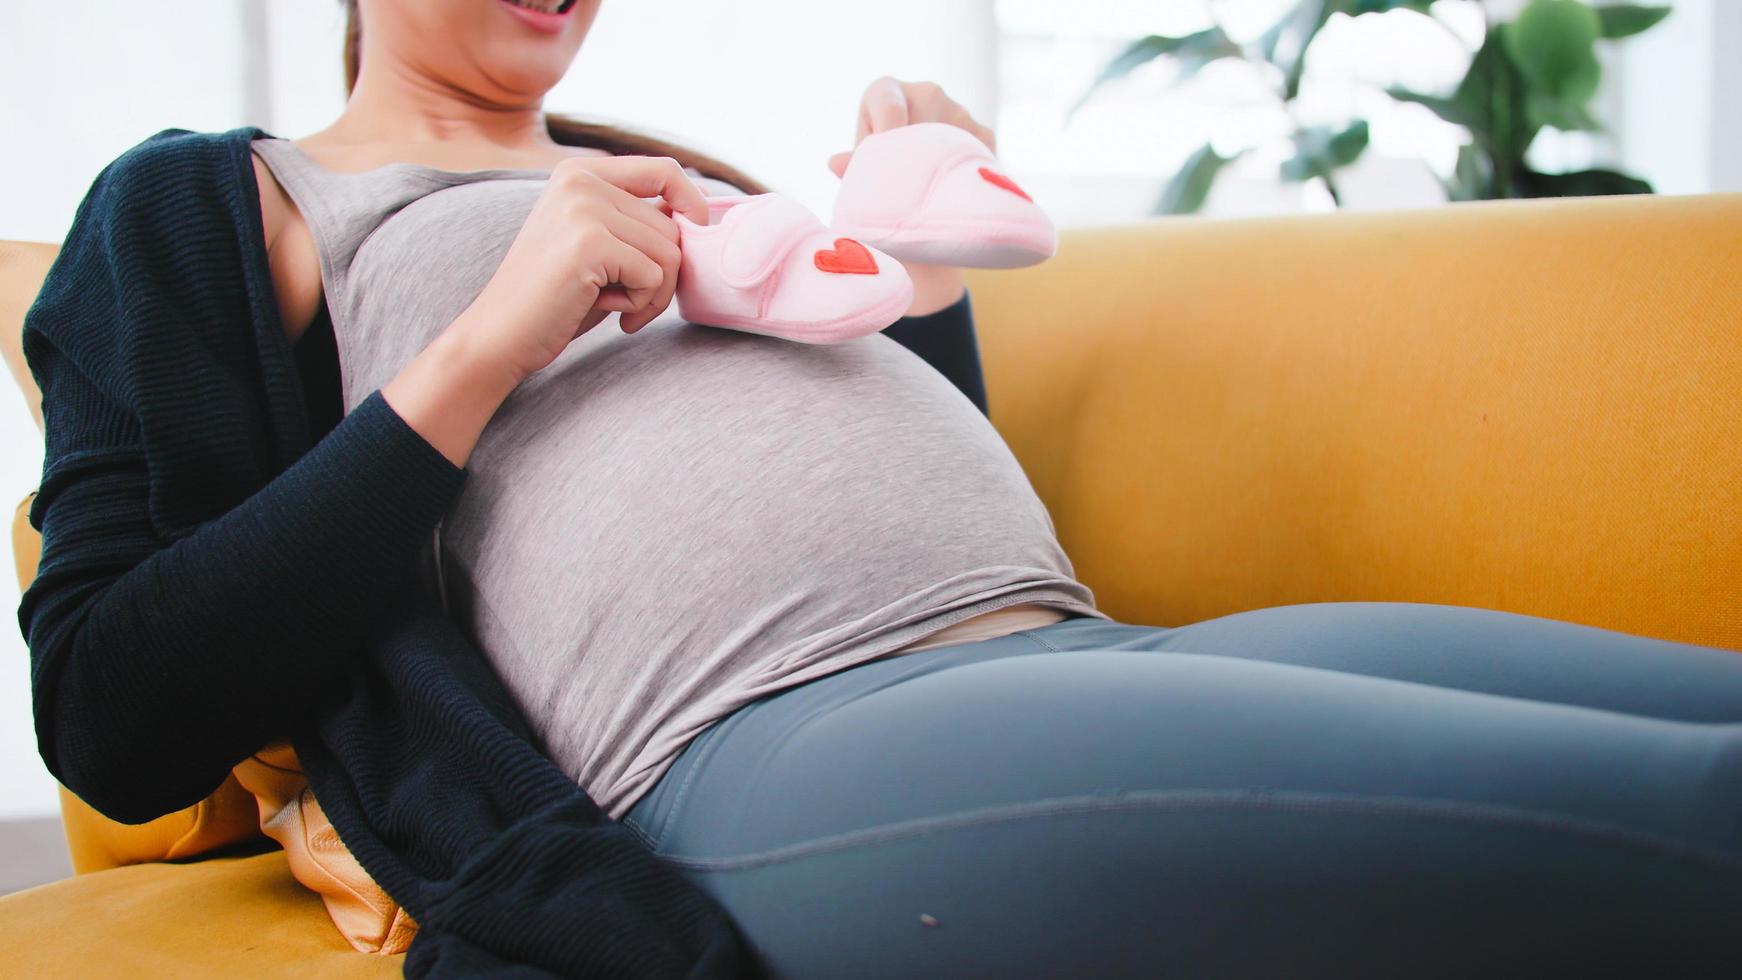 belle femme enceinte asiatique prépare des vêtements pour son nouveau-né. photo